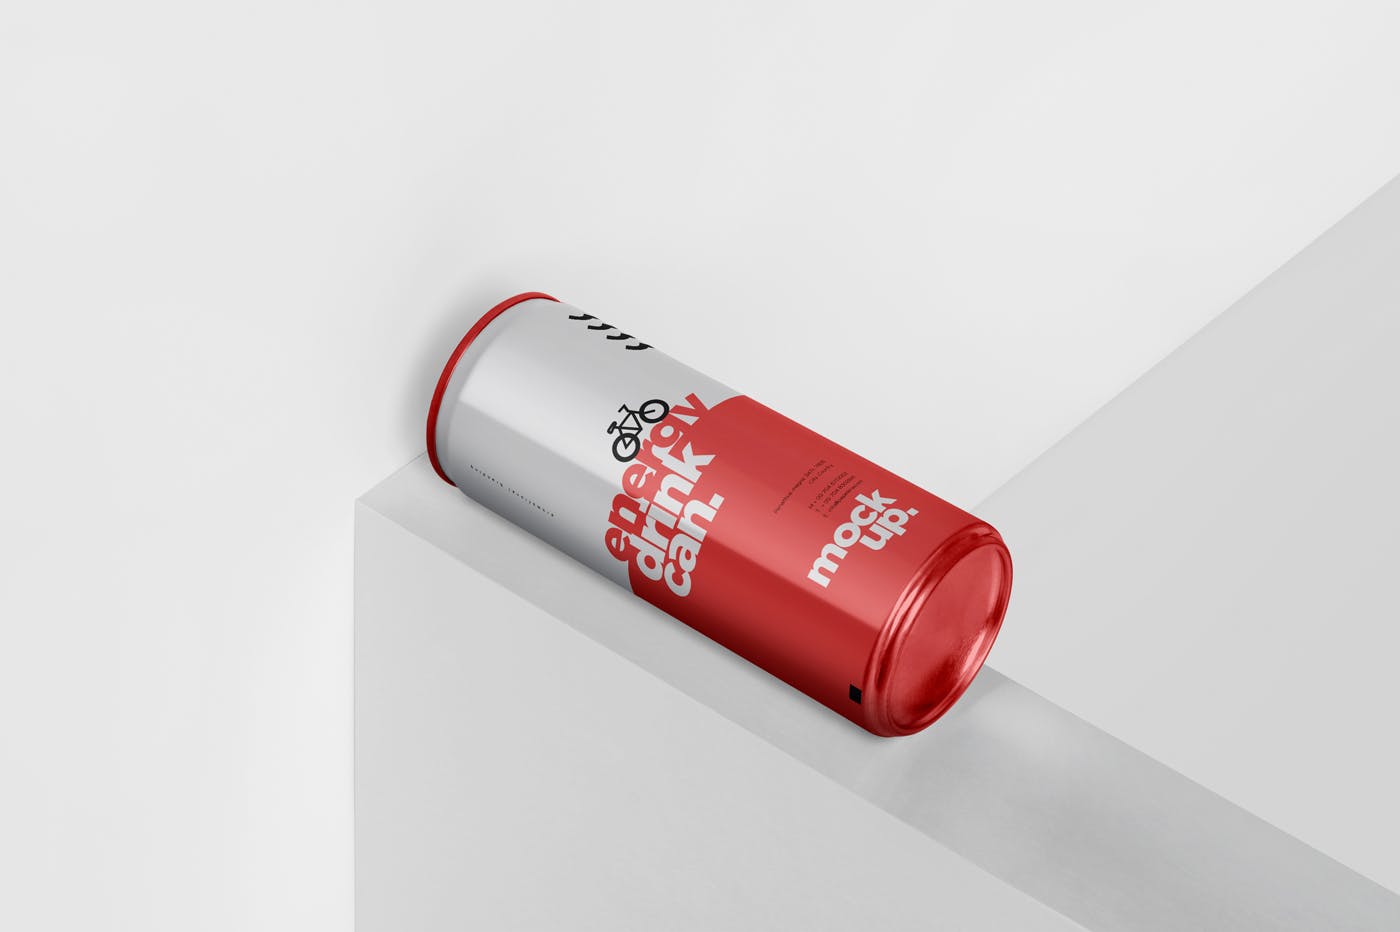 能量饮料易拉罐罐头外观设计非凡图库精选模板 Energy Drink Can Mock-Up – 250 ml插图(4)